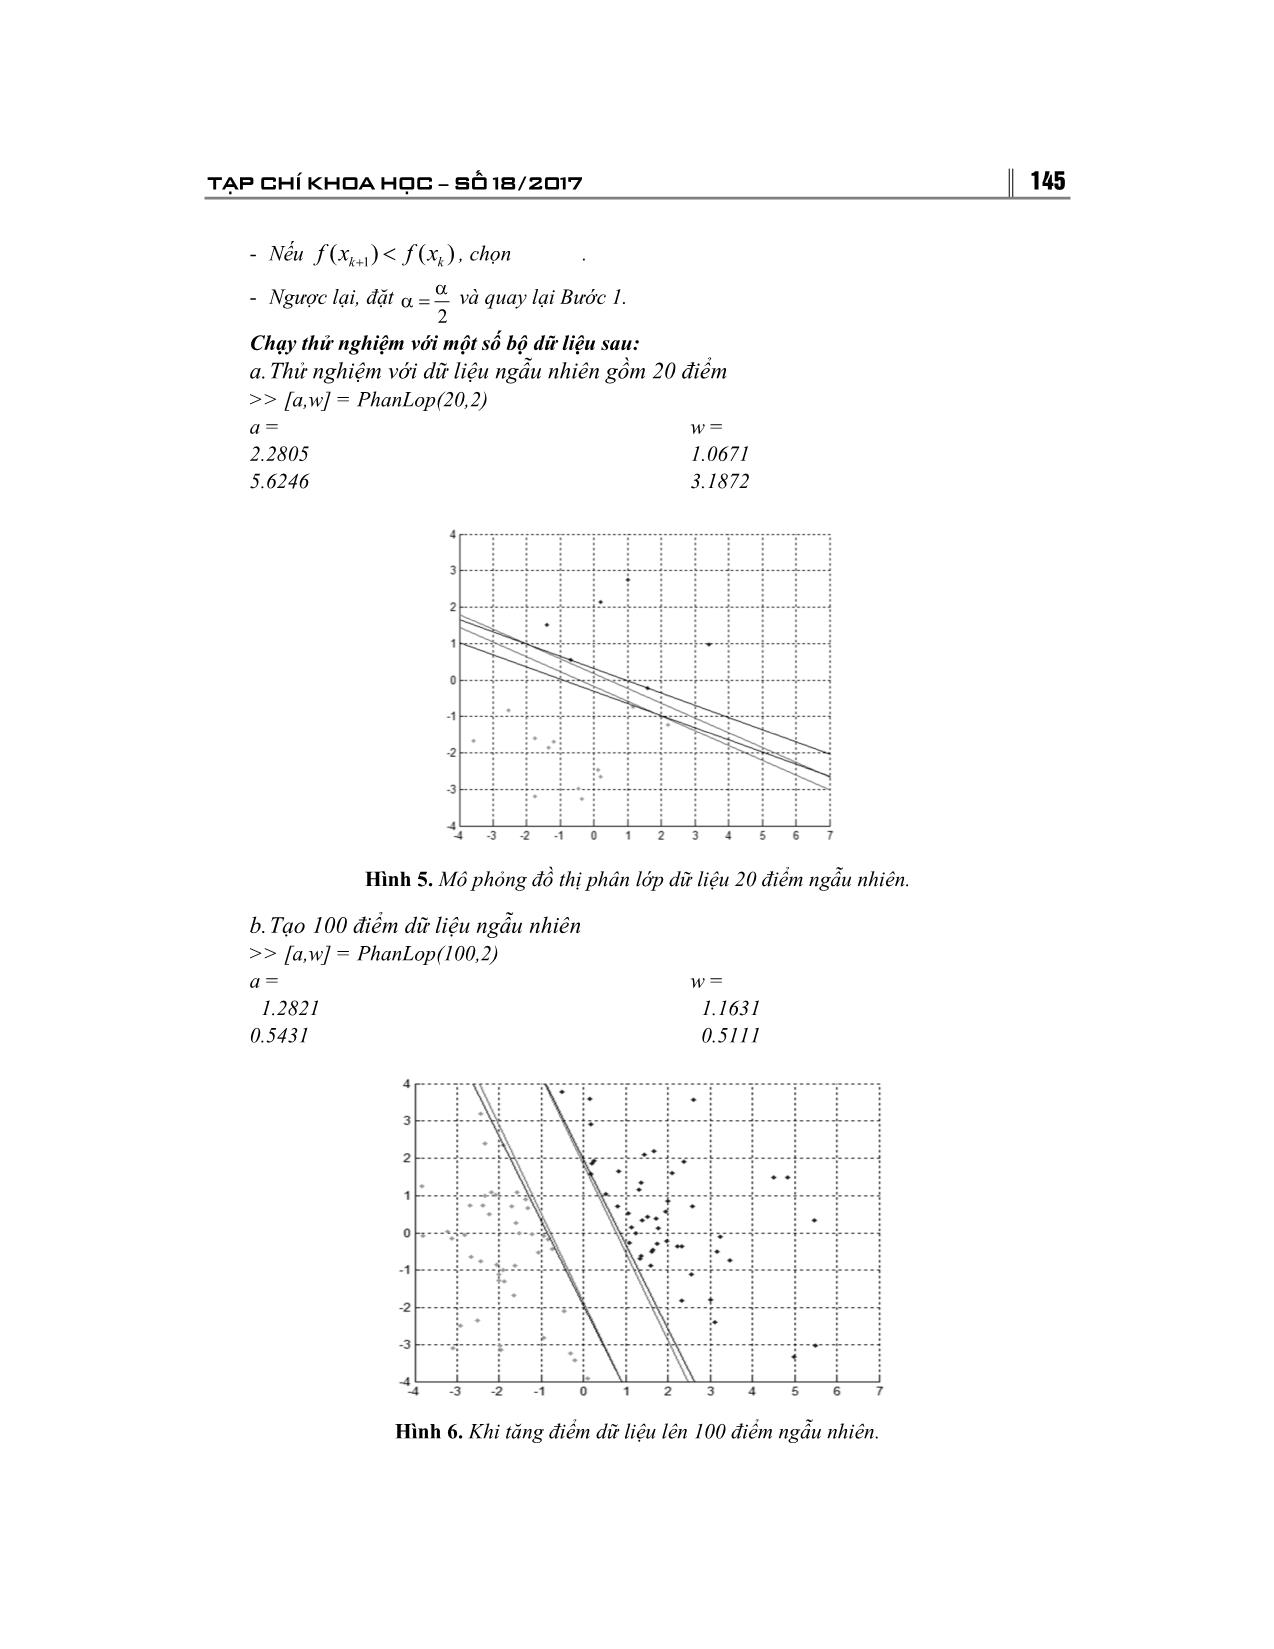 Giải bài toán tối ưu bằng phương pháp Gradient và ứng dụng trang 10